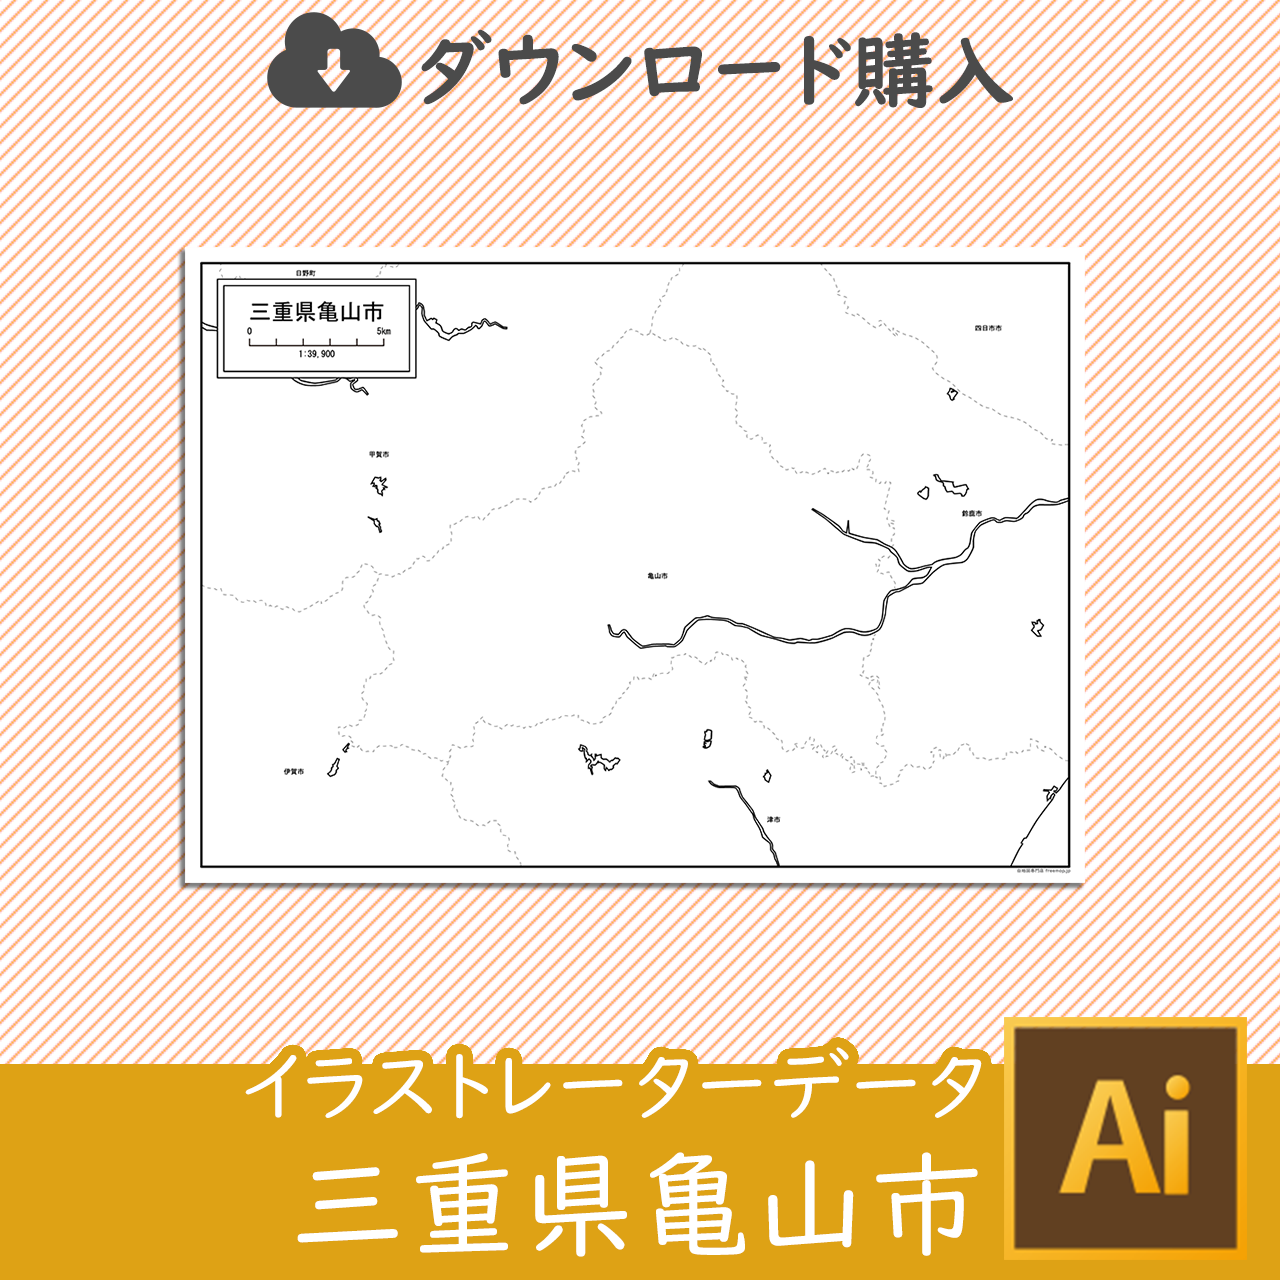 亀山市のaiデータのサムネイル画像